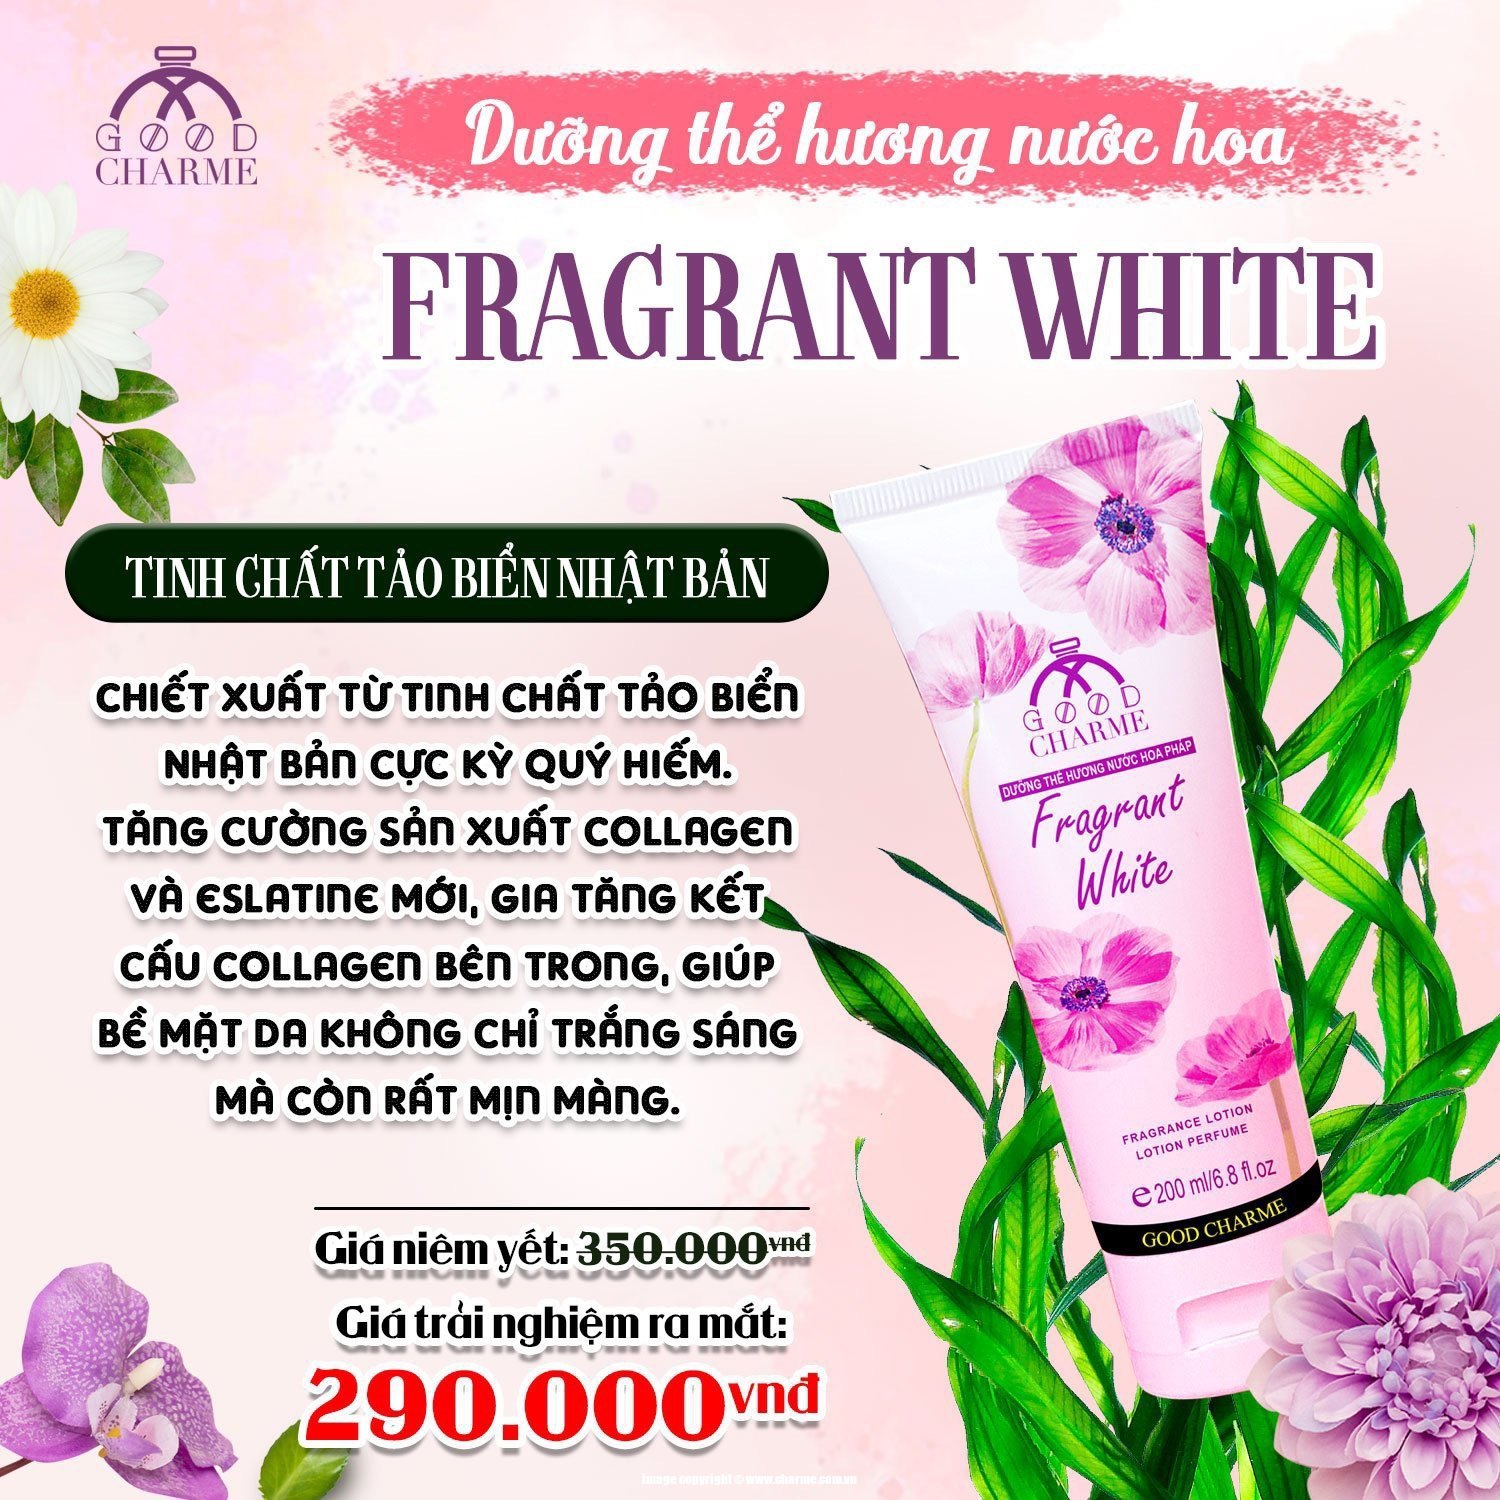 Dưỡng Thể Hương Nước Hoa Good Charme Fragrant White 200ml